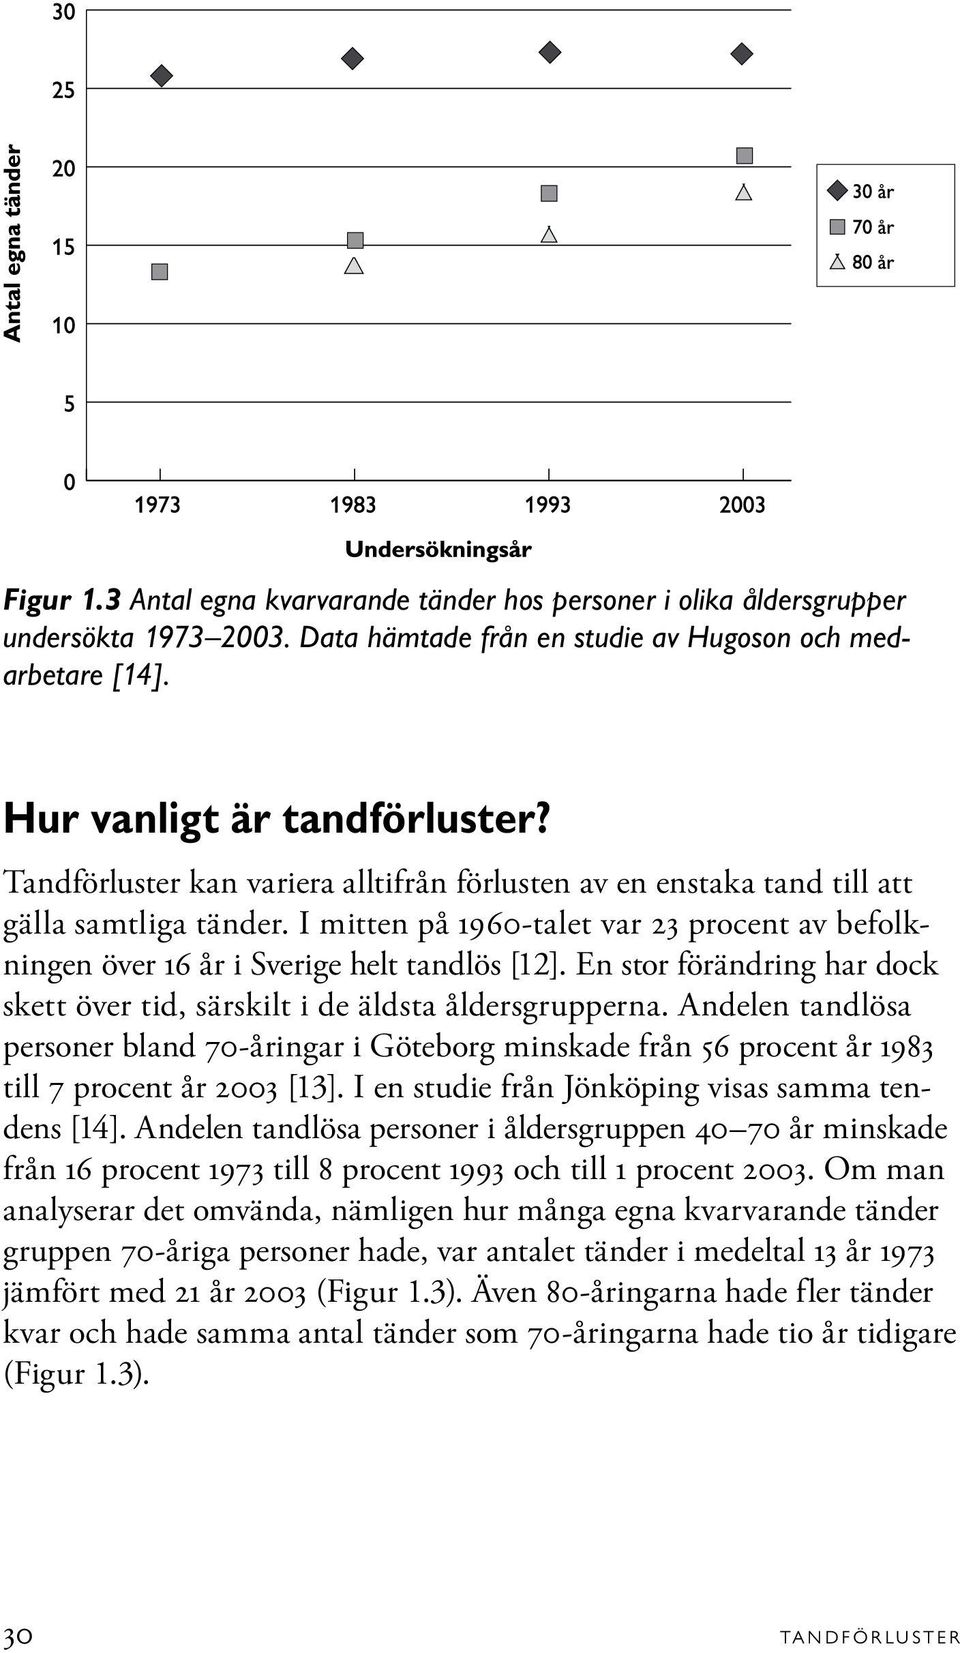 En stor förändring har dock skett över tid, särskilt i de äldsta åldersgrupperna. Andelen tandlösa personer bland 70-åringar i Göteborg minskade från 56 procent år 1983 till 7 procent år 2003 [13].